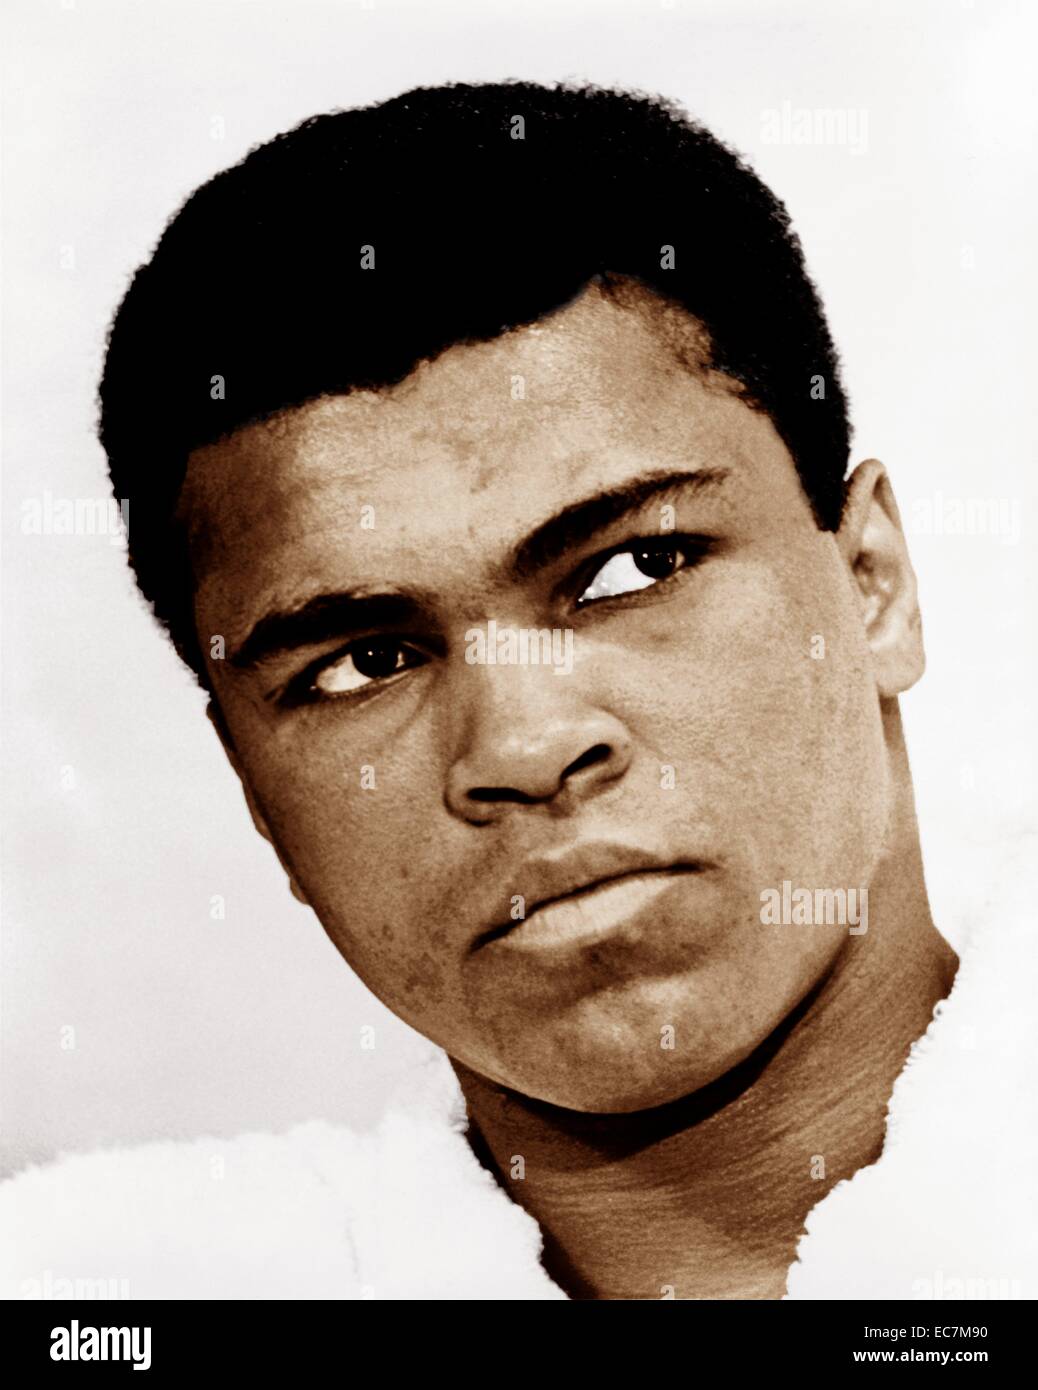 Muhammad Ali (nato Cassio argilla, Jr.; 17 gennaio 1942) American ex boxer professionale, considerato tra i più grandi pesi massimi nello sport la storia. Foto Stock